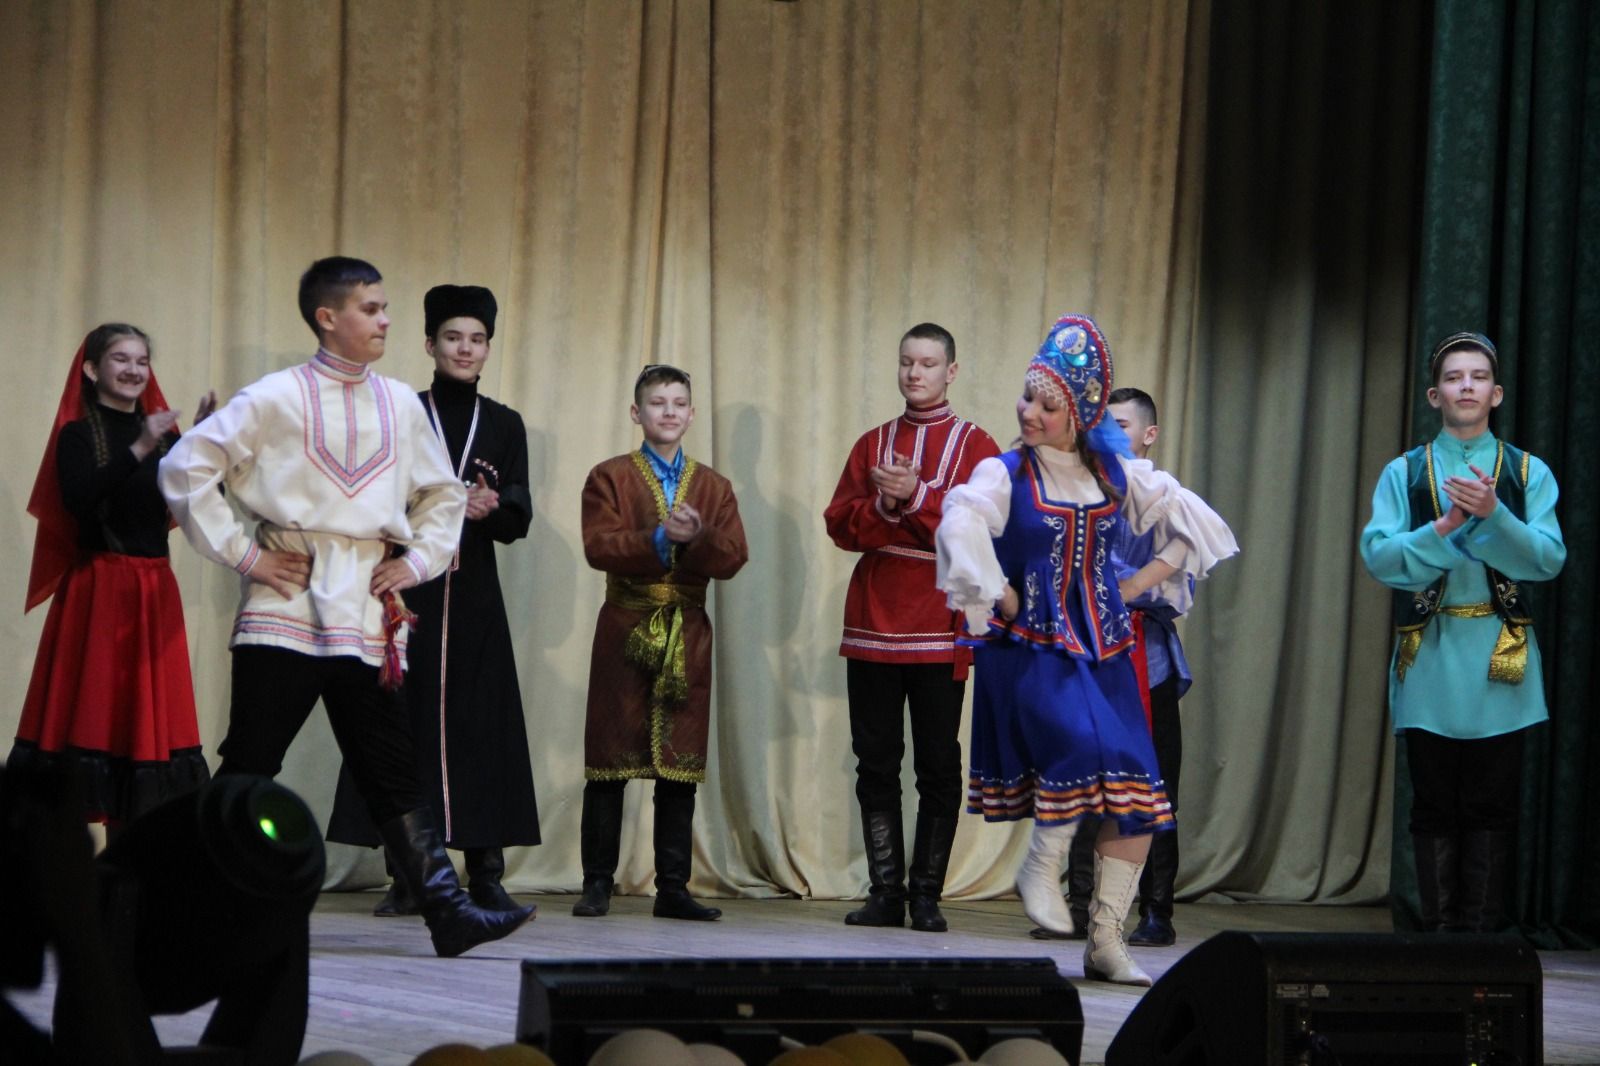 В Болгаре прошёл зональный этап республиканского конкурса «Без бергэ»